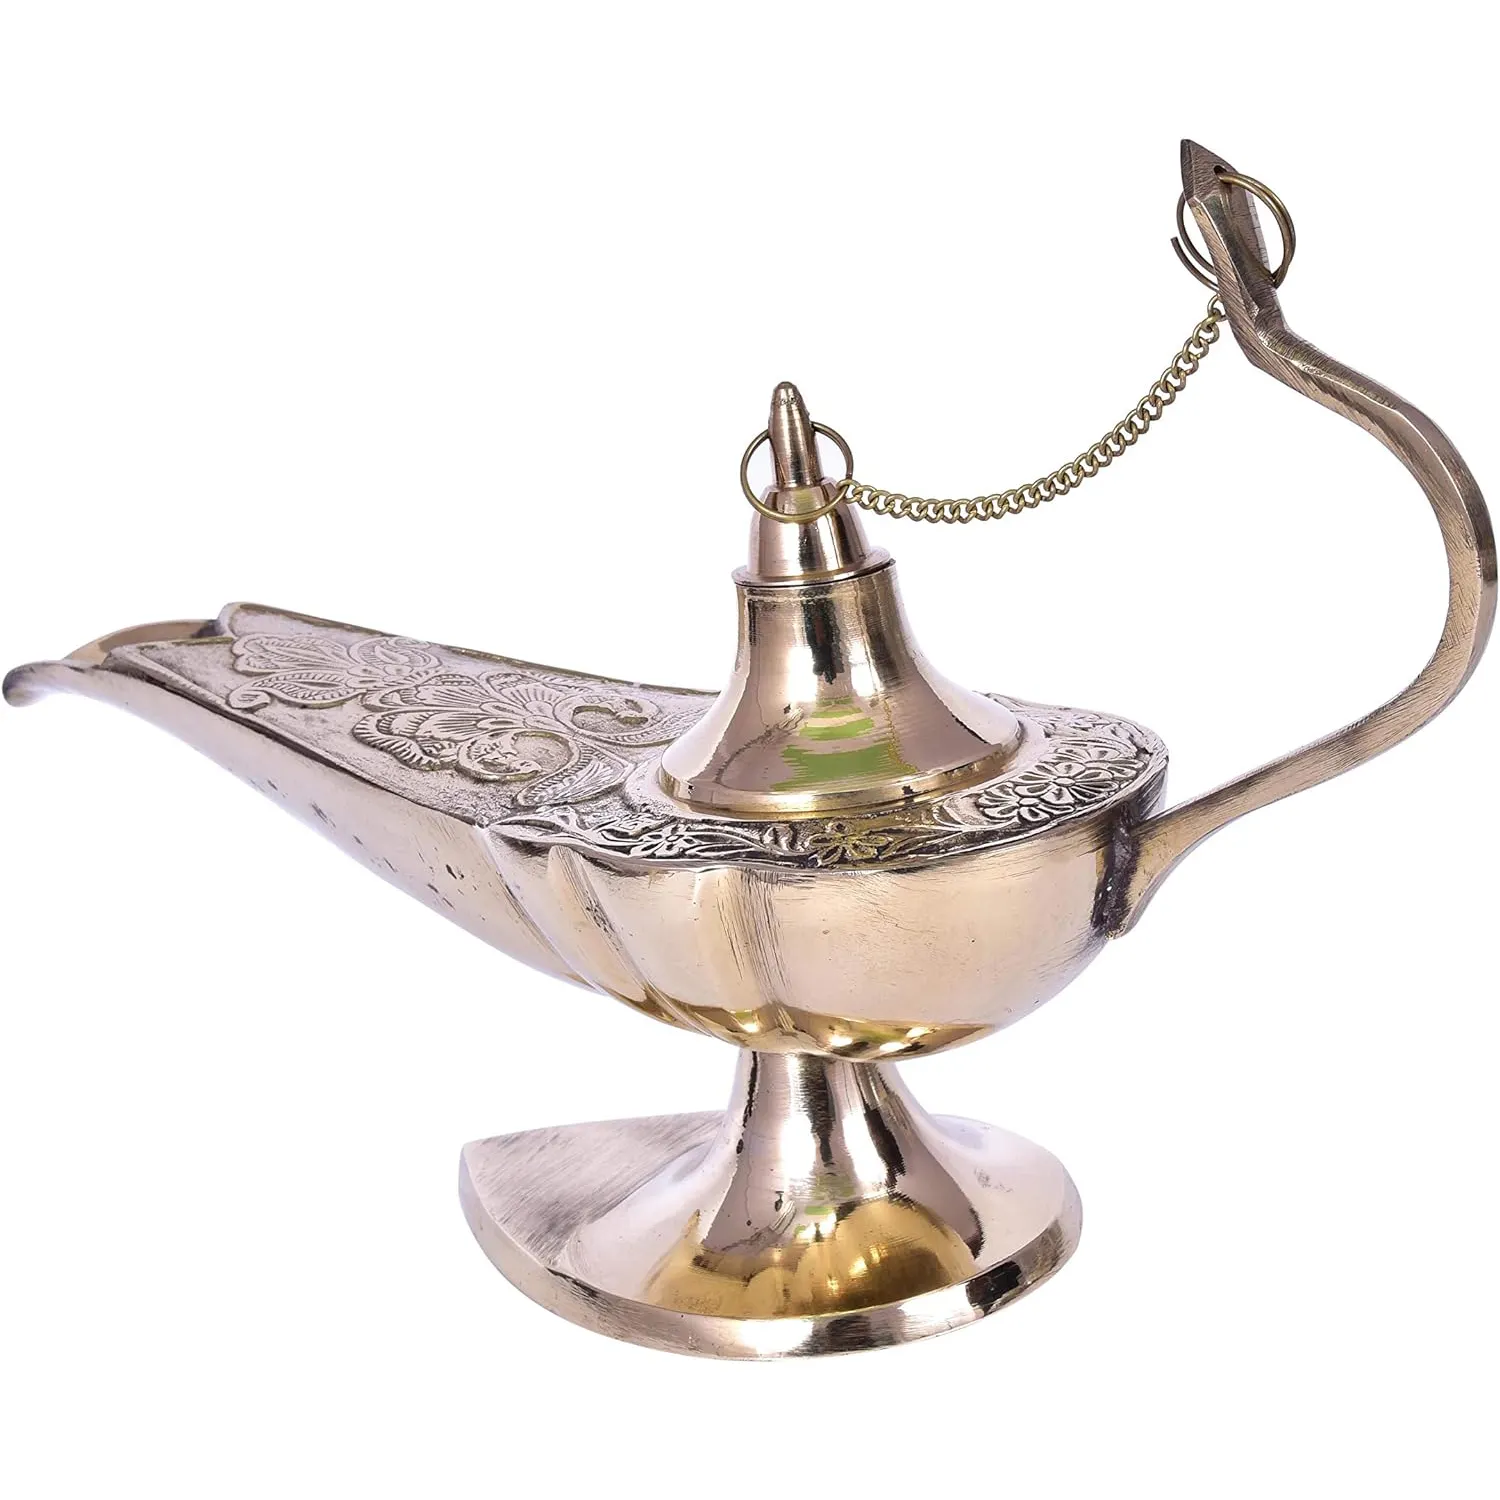 מנורת אלאדין פליז וינטג' בגימור זהב מנורת אלאדין הטובה ביותר לעיצוב הבית המוכשר פריט עיצוב מלון ומשרדים למכירה